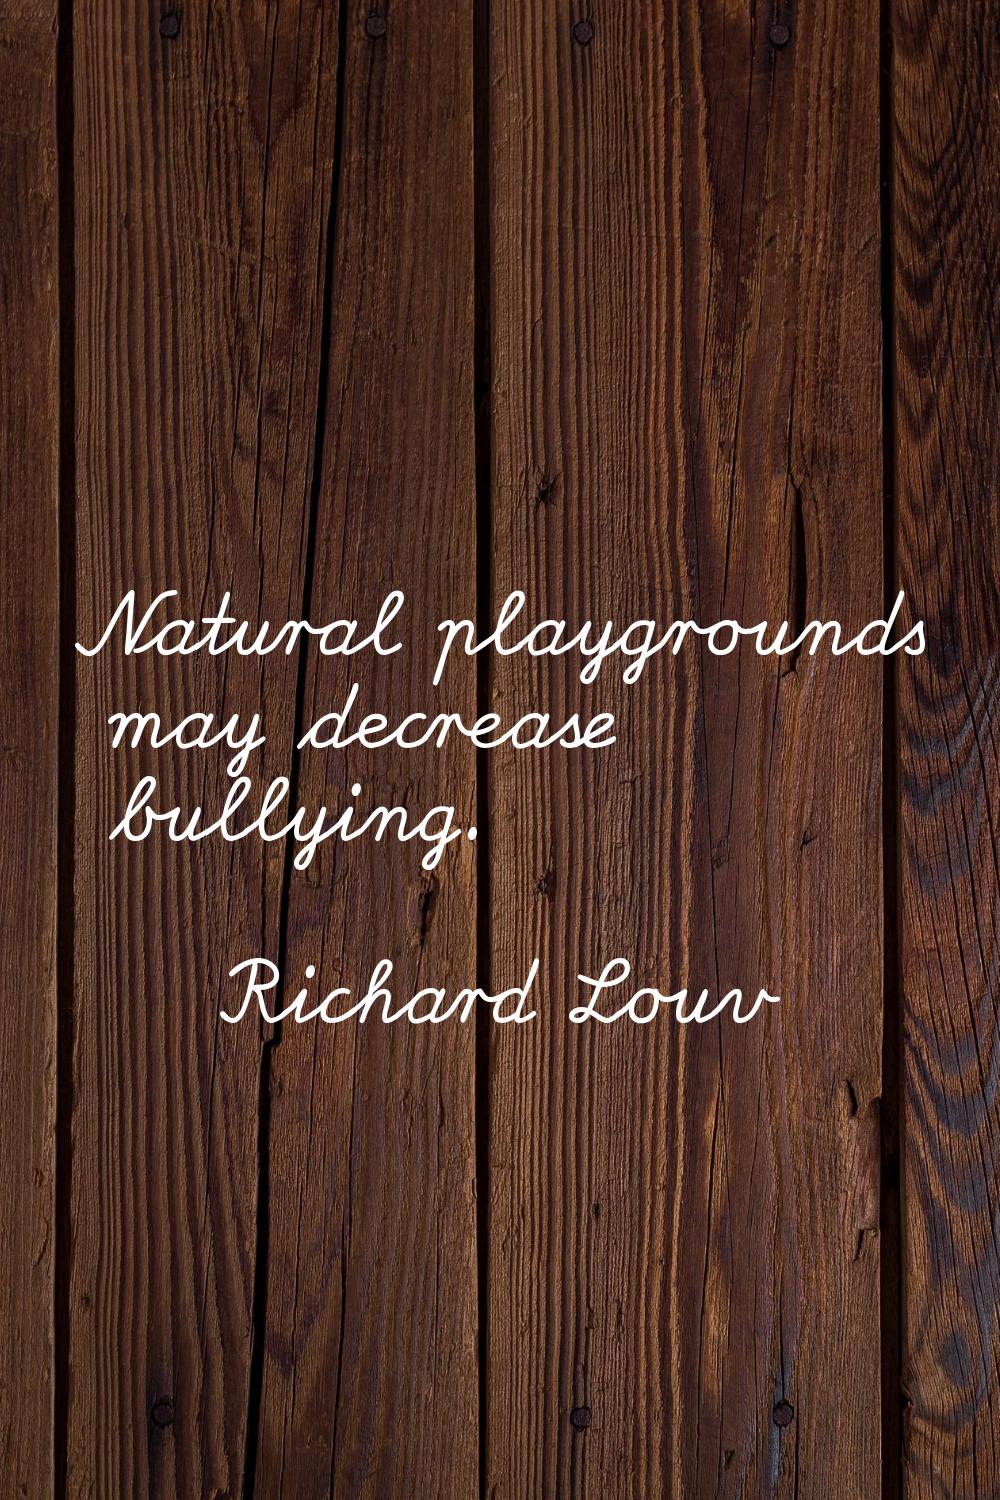 Natural playgrounds may decrease bullying.